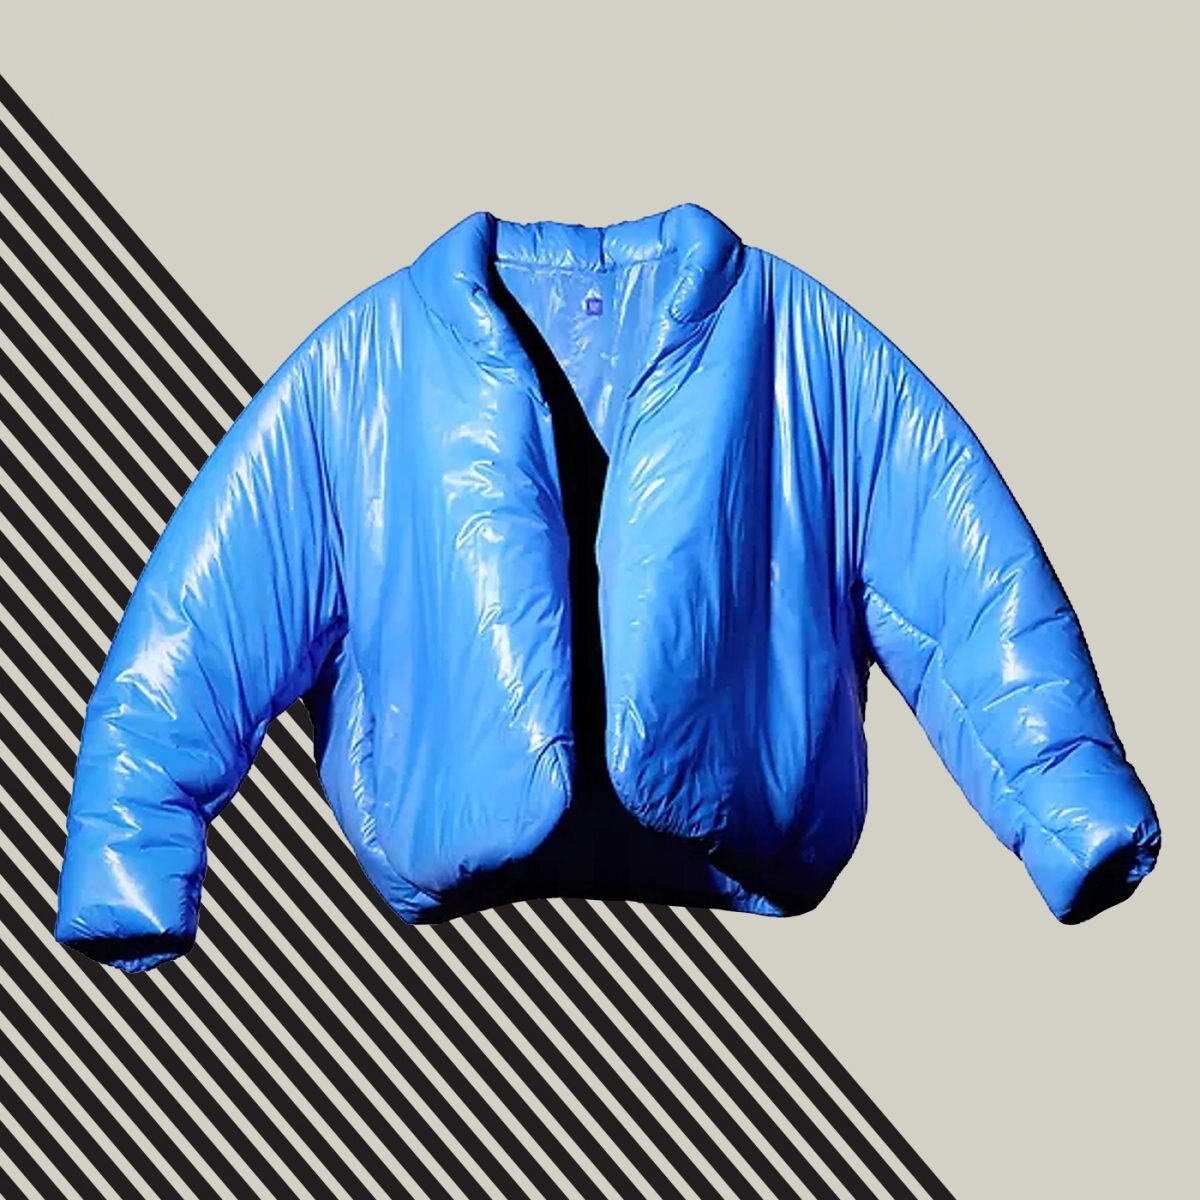 La chaqueta de la colaboración de YEEZY x GAP